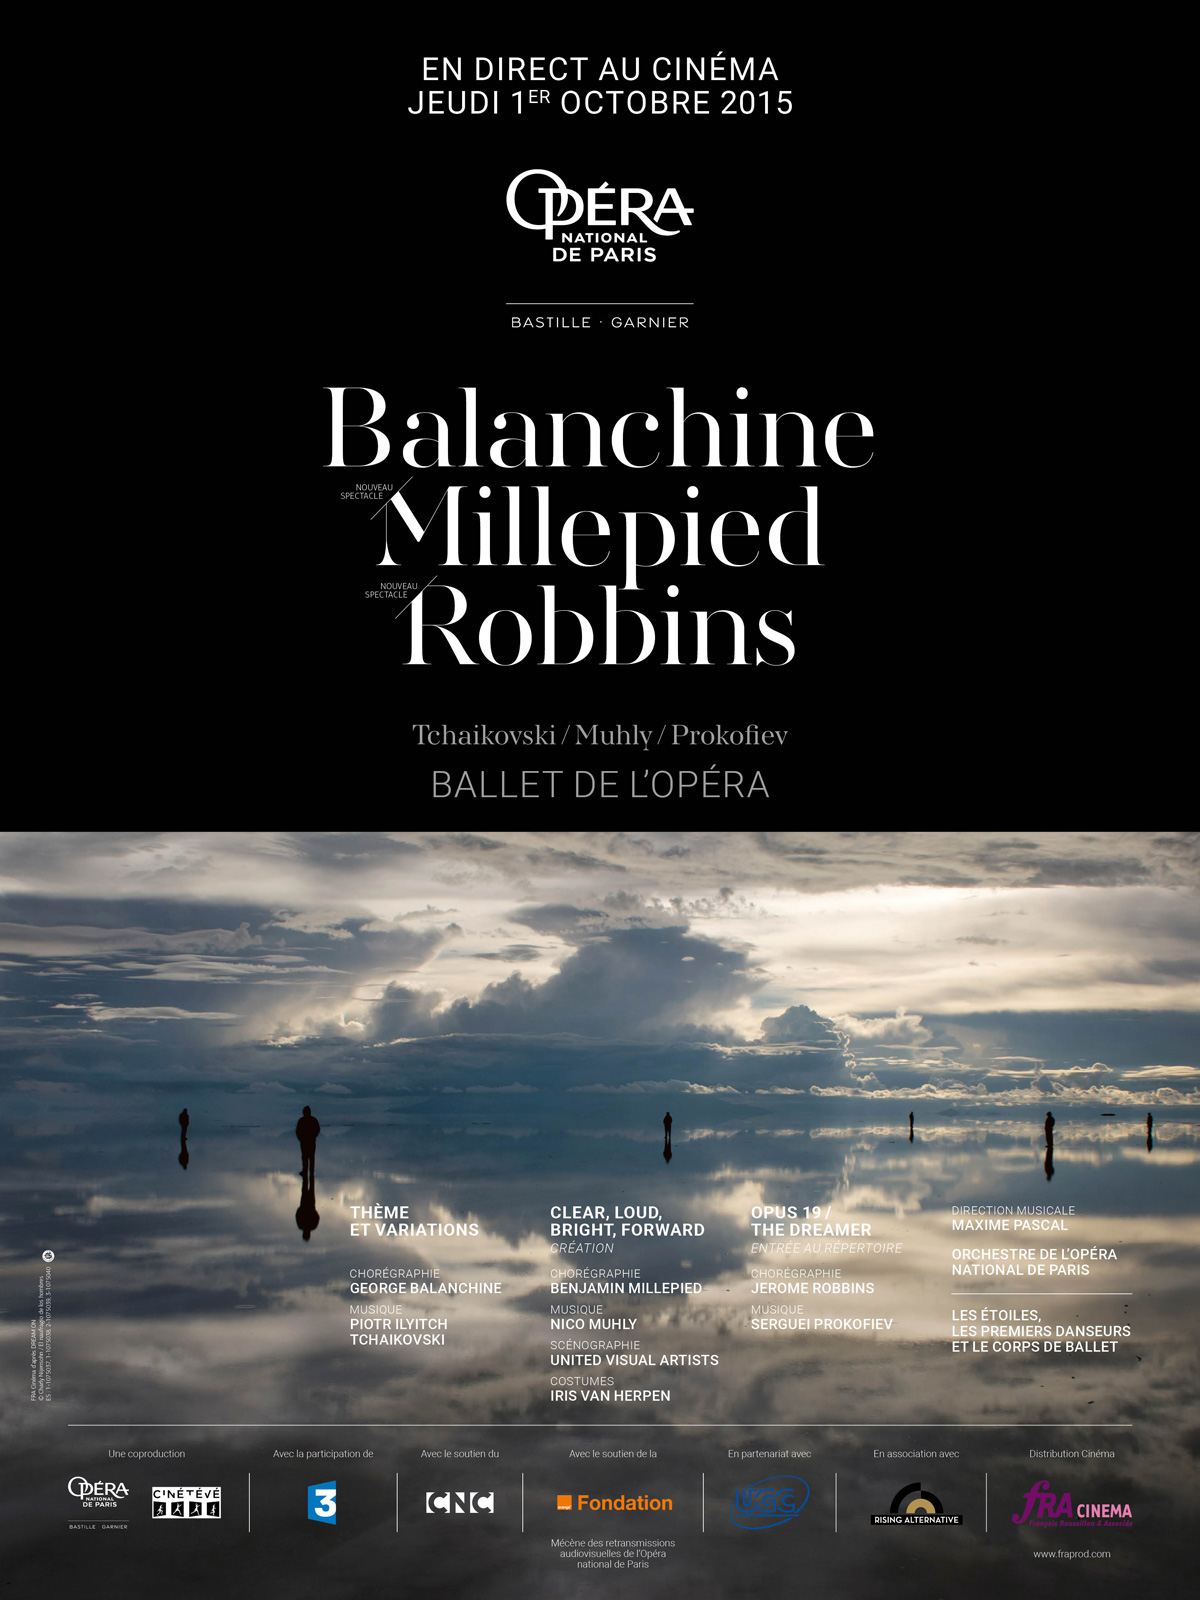 Jérôme Robbins / Benjamin Millepied / George Balanchine (UGC Viva l'opéra- FRA Cinéma)